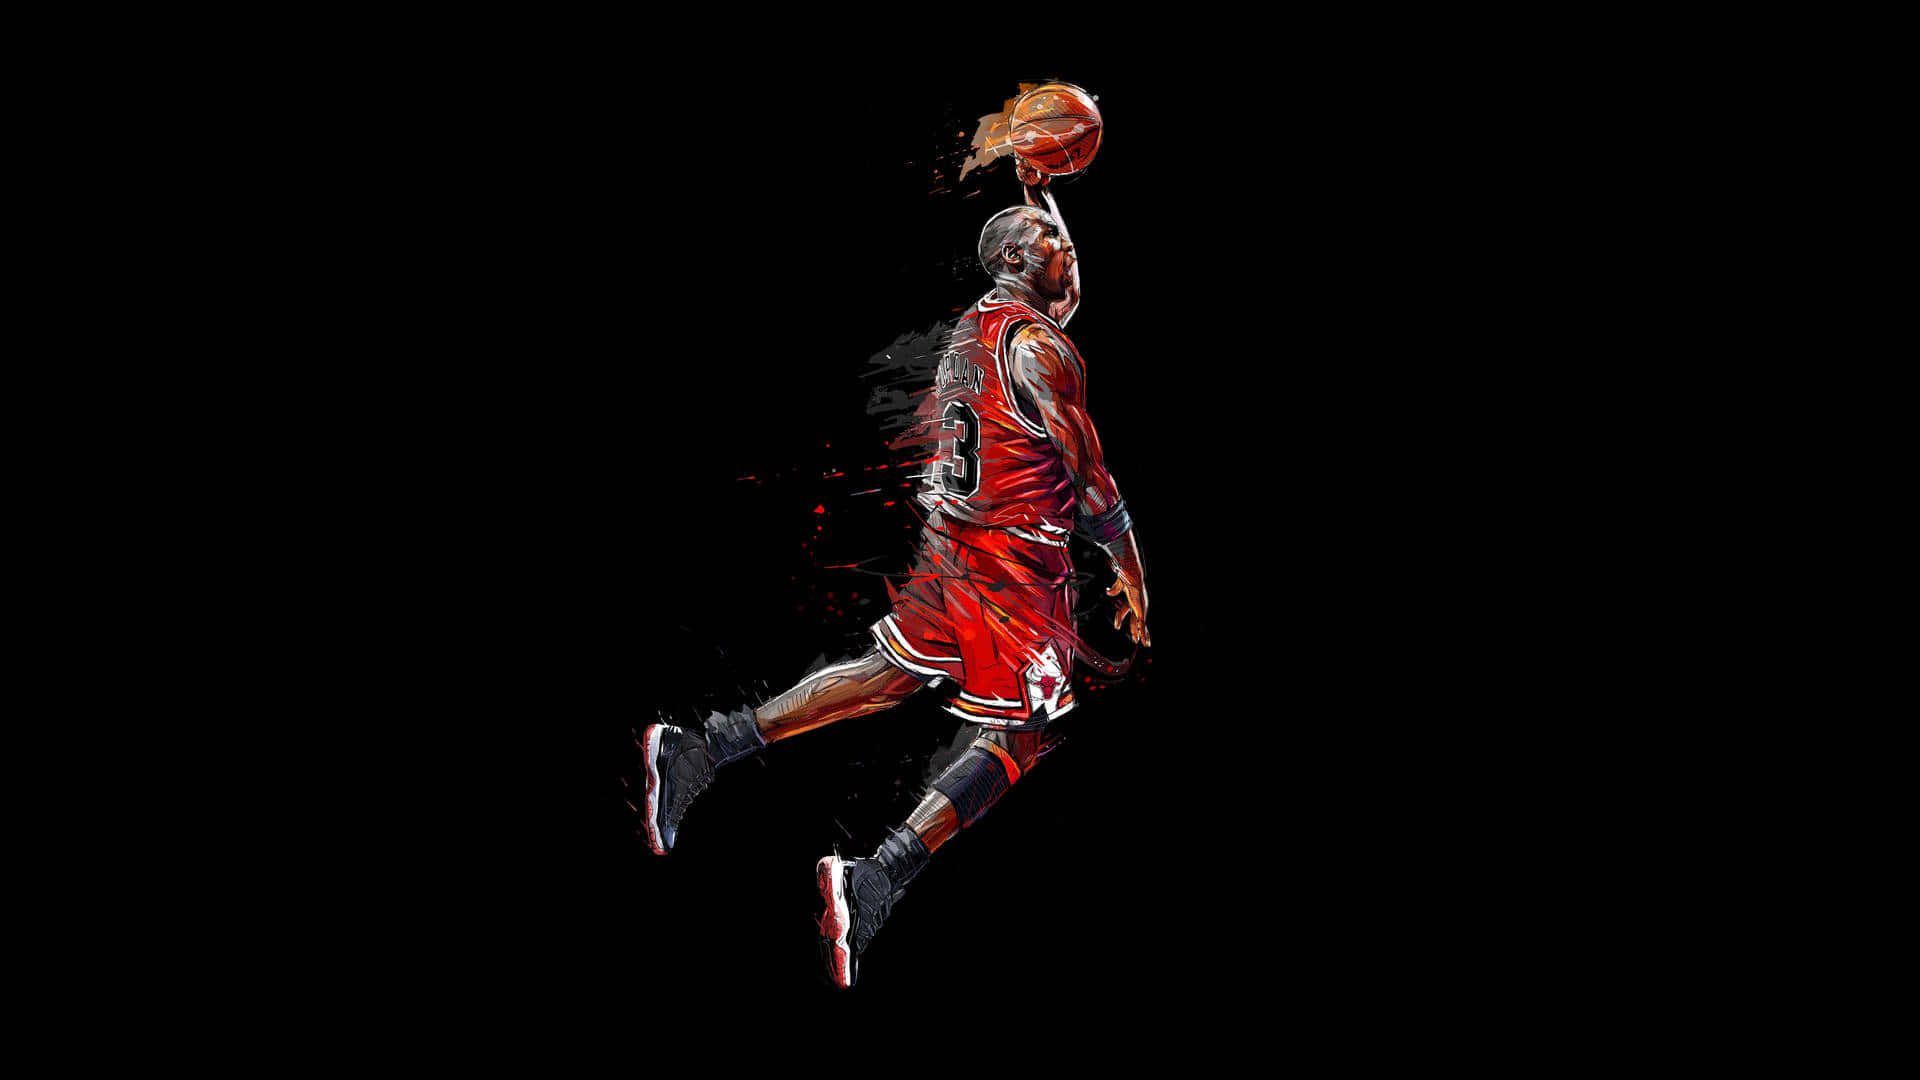 Laestética De Baloncesto En Negro De Michael Jordan Haciendo Clavadas Fondo de pantalla